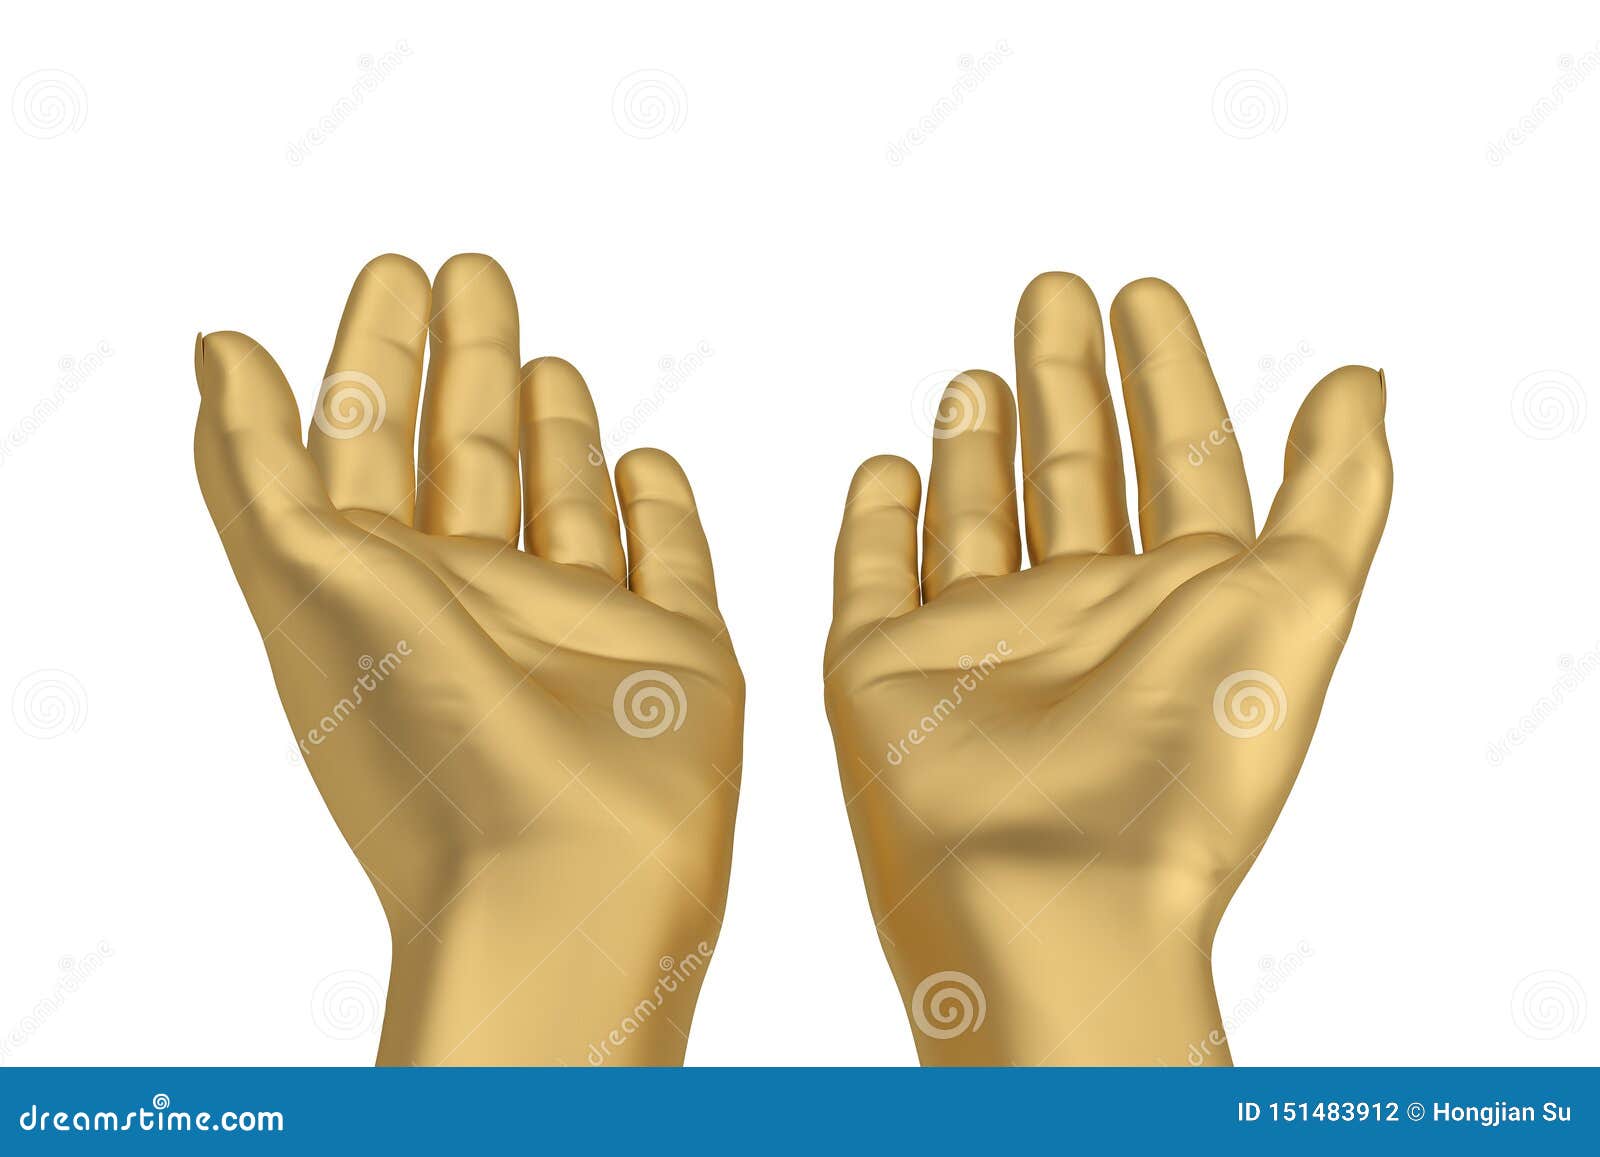 Произведения золотые руки. Золотые руки. Золотые руки на белом фоне. Золотые руки иллюстрация. Золотые руки фразеологизм.